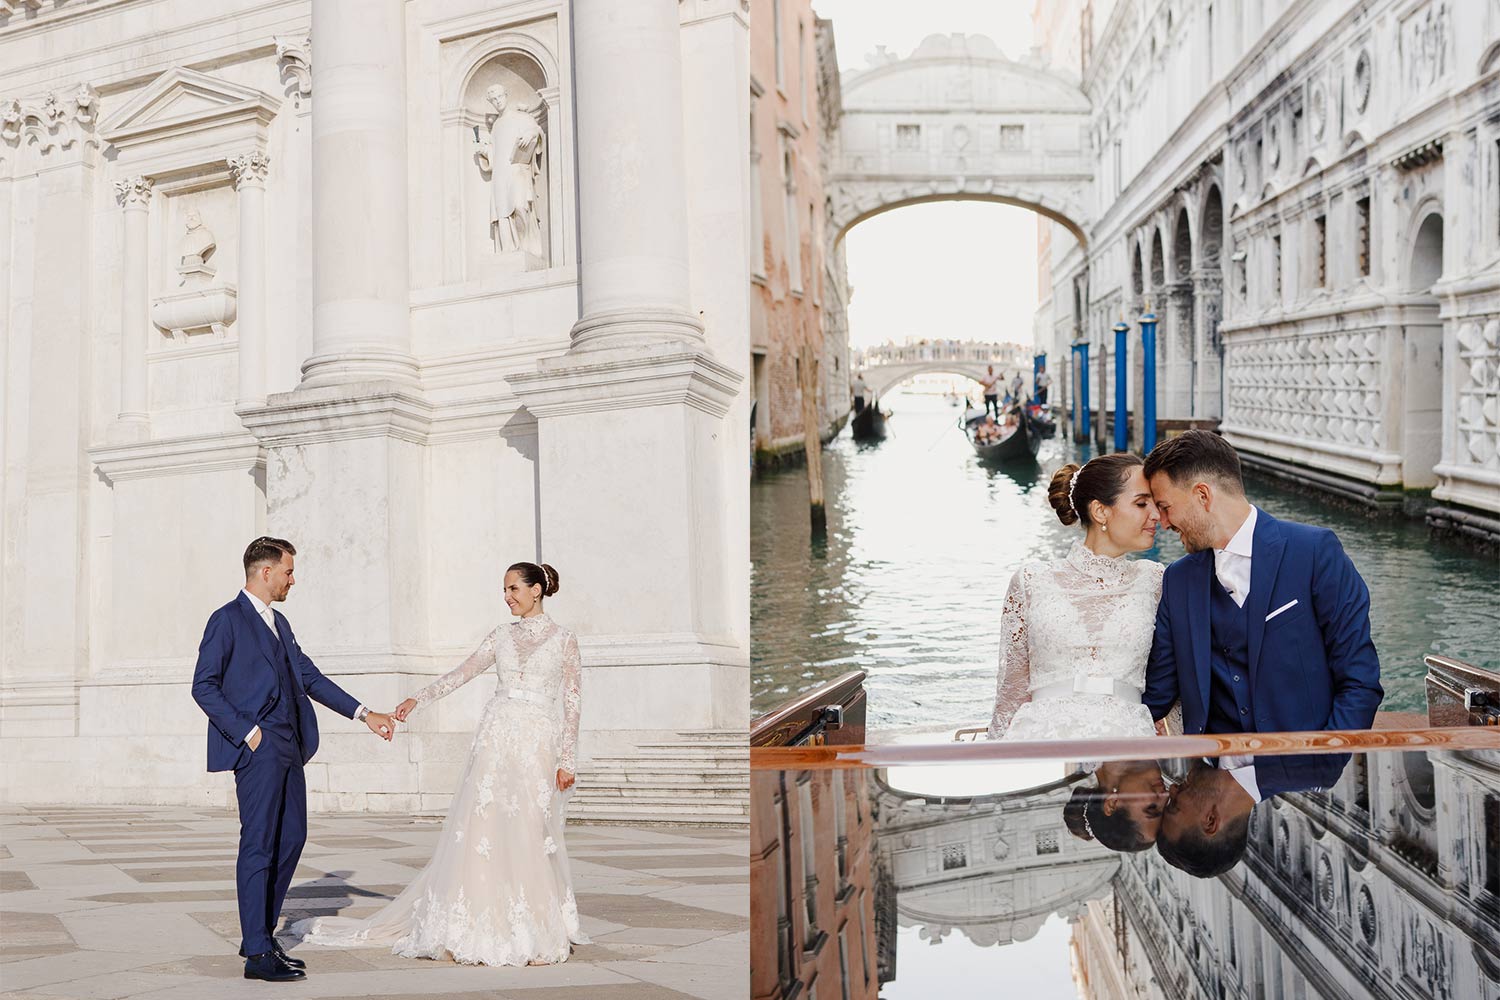 Giorgia e Francesco nel taxi acqueo a San Marco - Storia incantata a Venezia